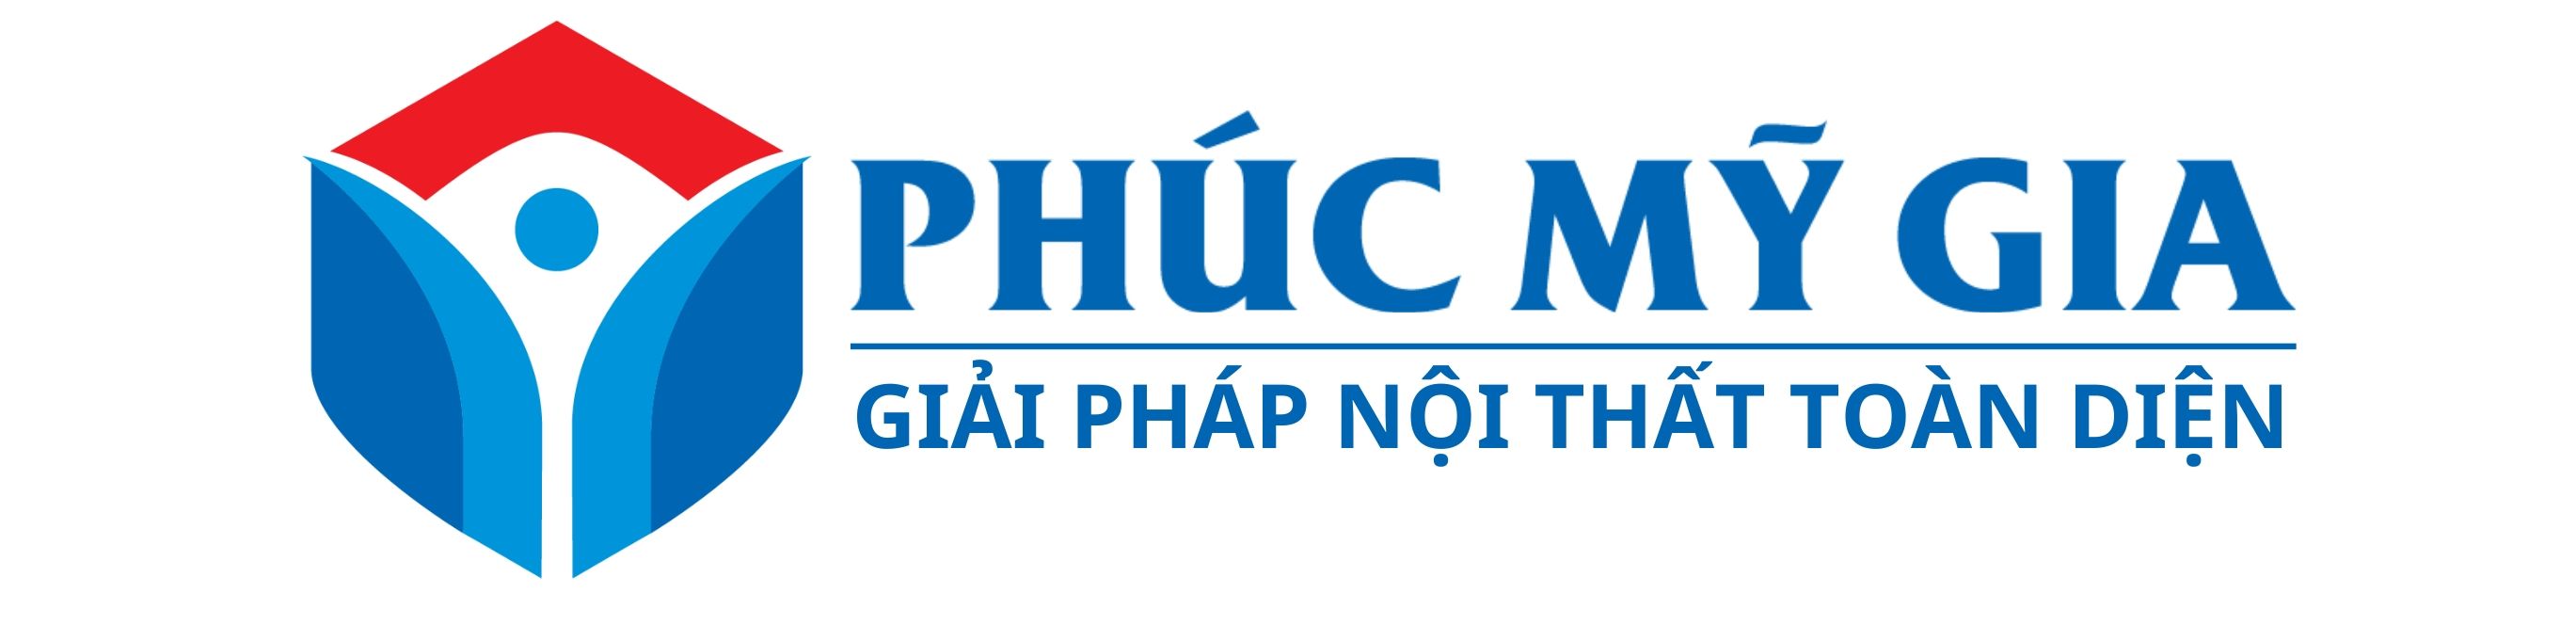 pmg logo - slogan  (1).jpg